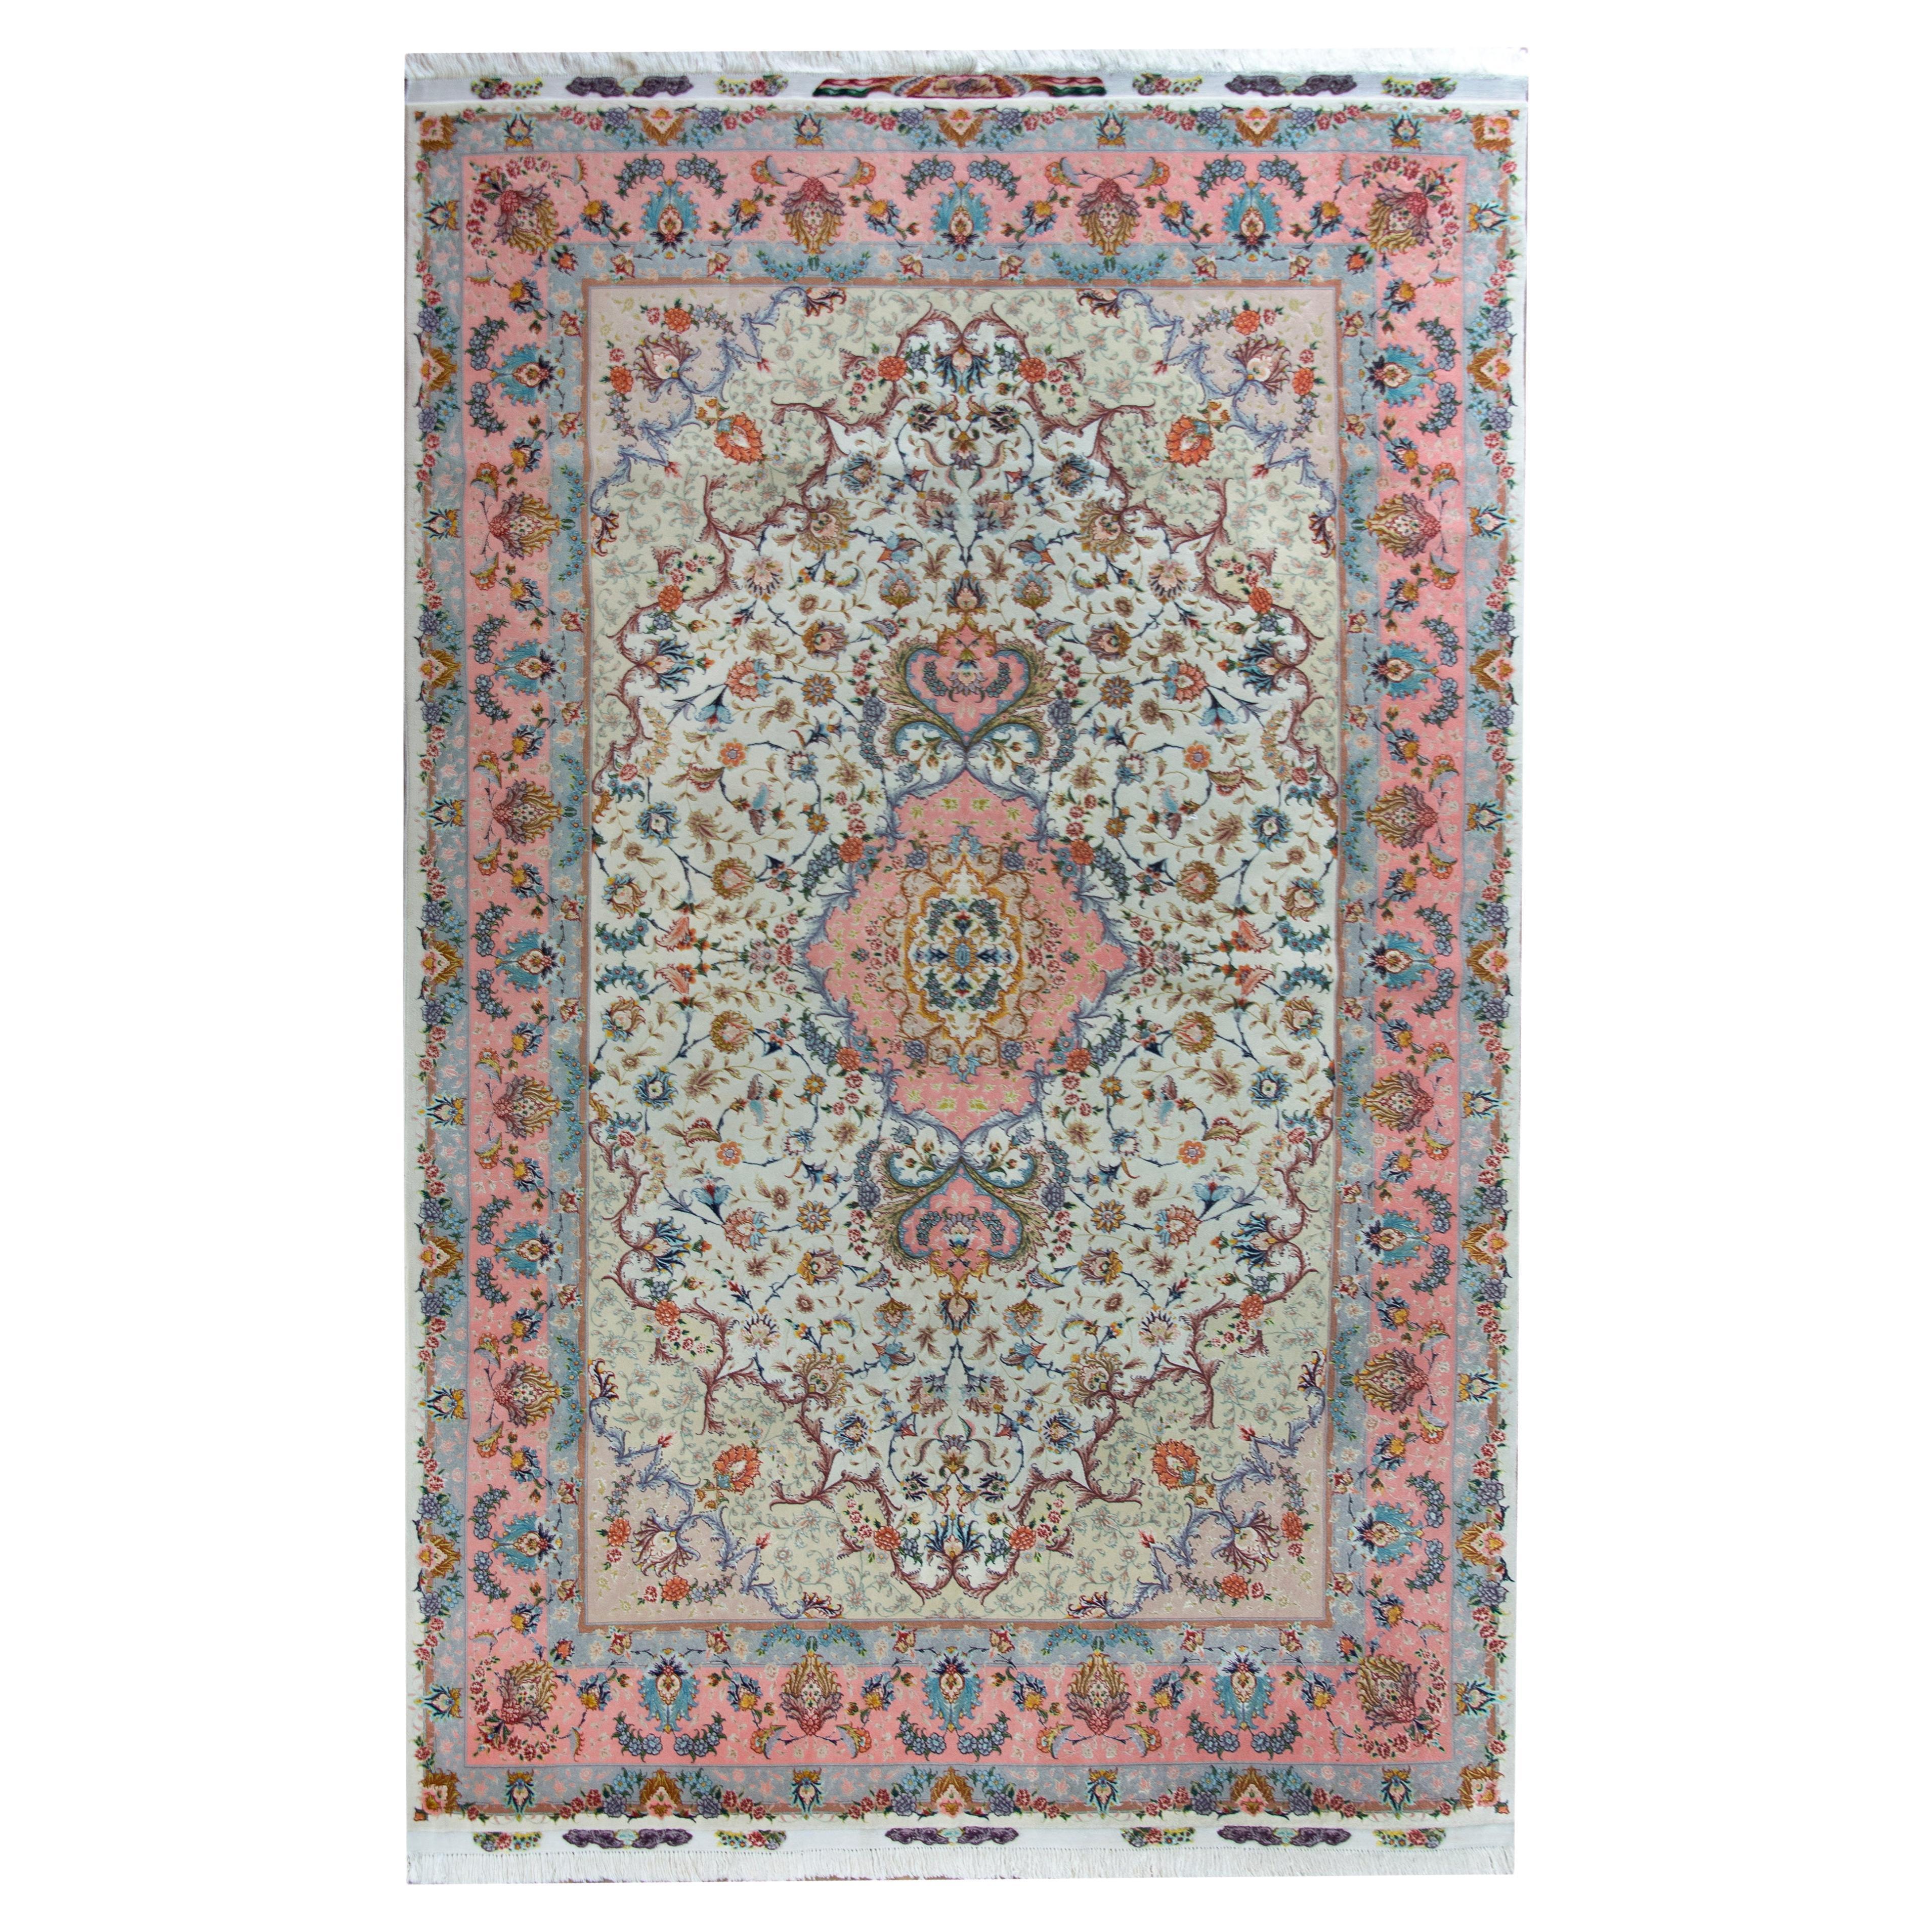 Persischer Tabriz-Teppich aus Seide